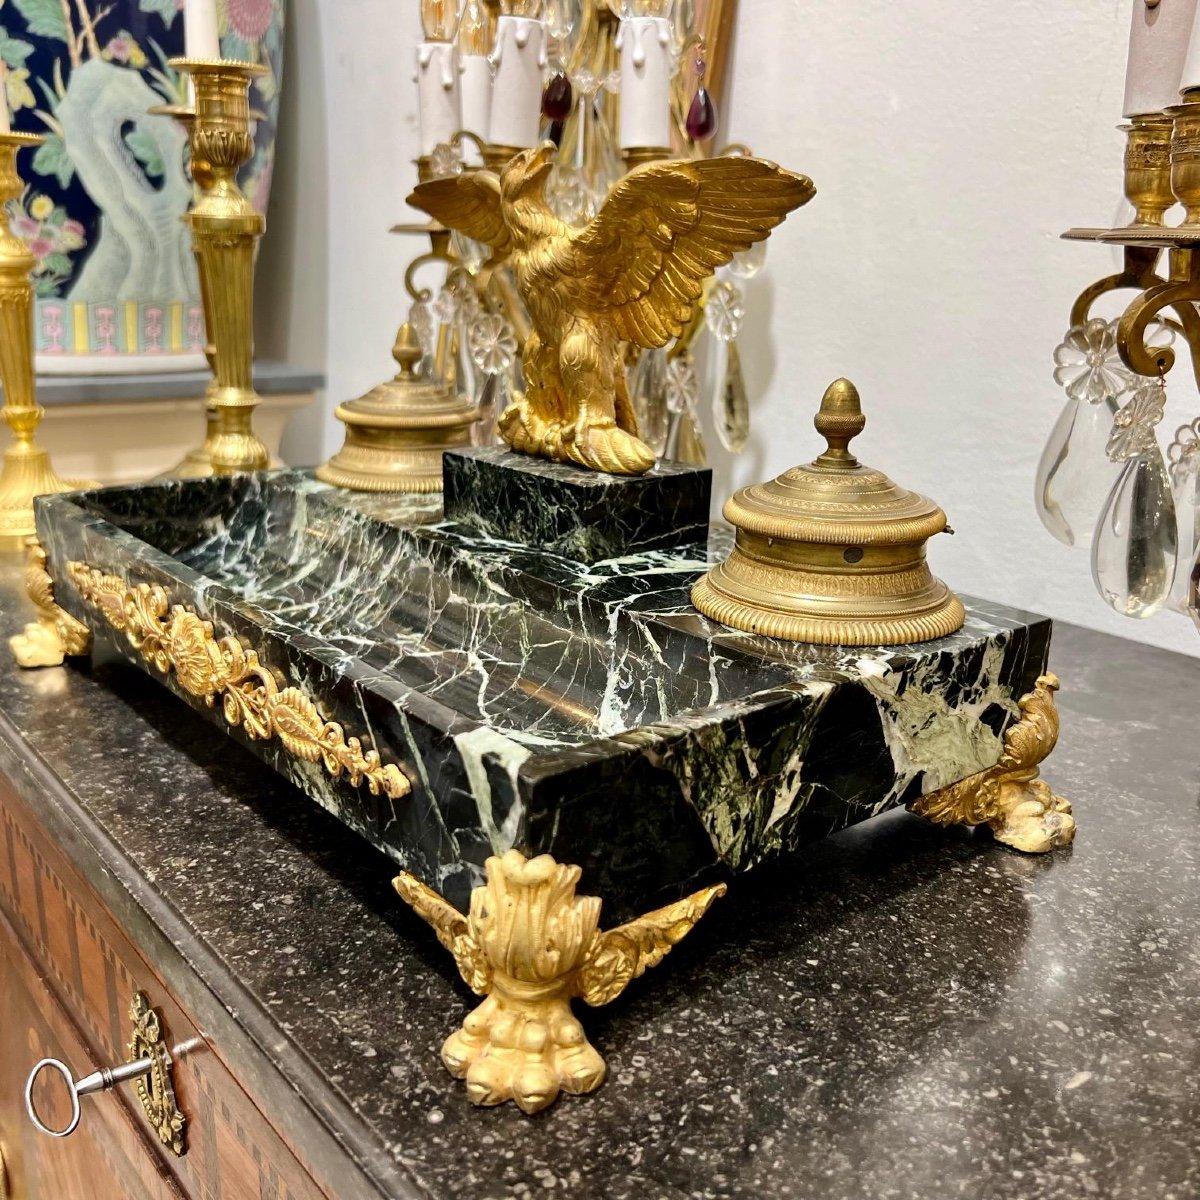 Nous vous présentons ce magnifique encrier de style Empire du XIXe siècle, d'époque Napoléon III, orné d'un motif d'aigle impérial en relief placé entre les deux encriers tenus par des supports en bronze doré. Le marbre de Portoro, l'un des plus